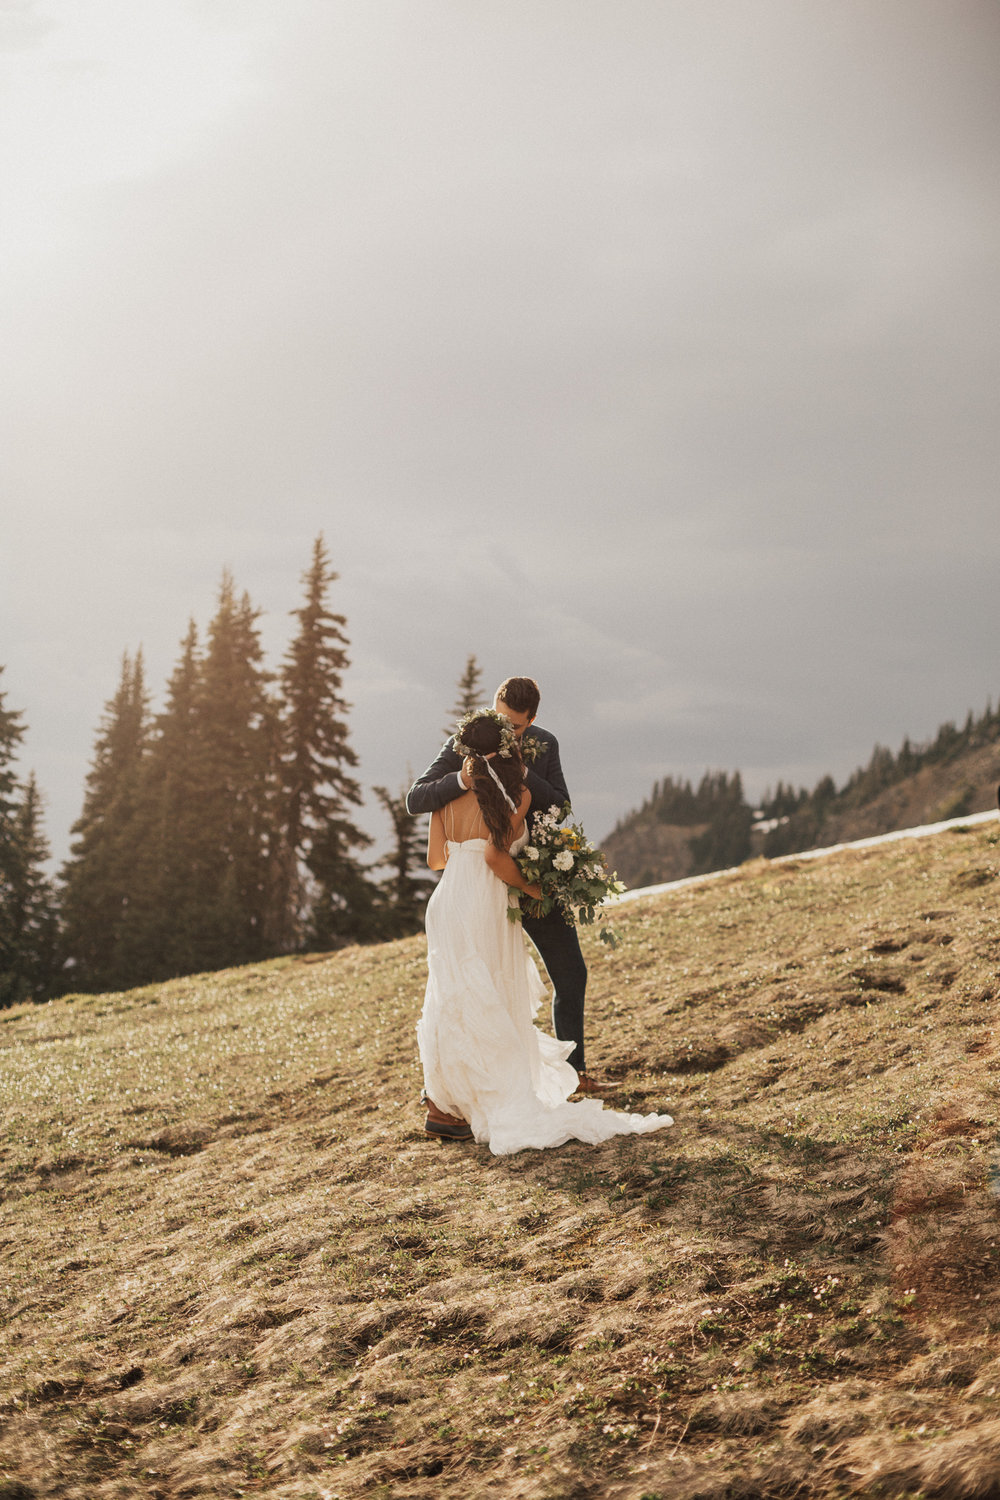 elopement-ideas-elopement-packages-elopement-inspo-eloping-ideas-mountain-elopement-cleveland-wedding-photographer-destination-wedding-photographer-travel-photographer-europe-wedding-photographer